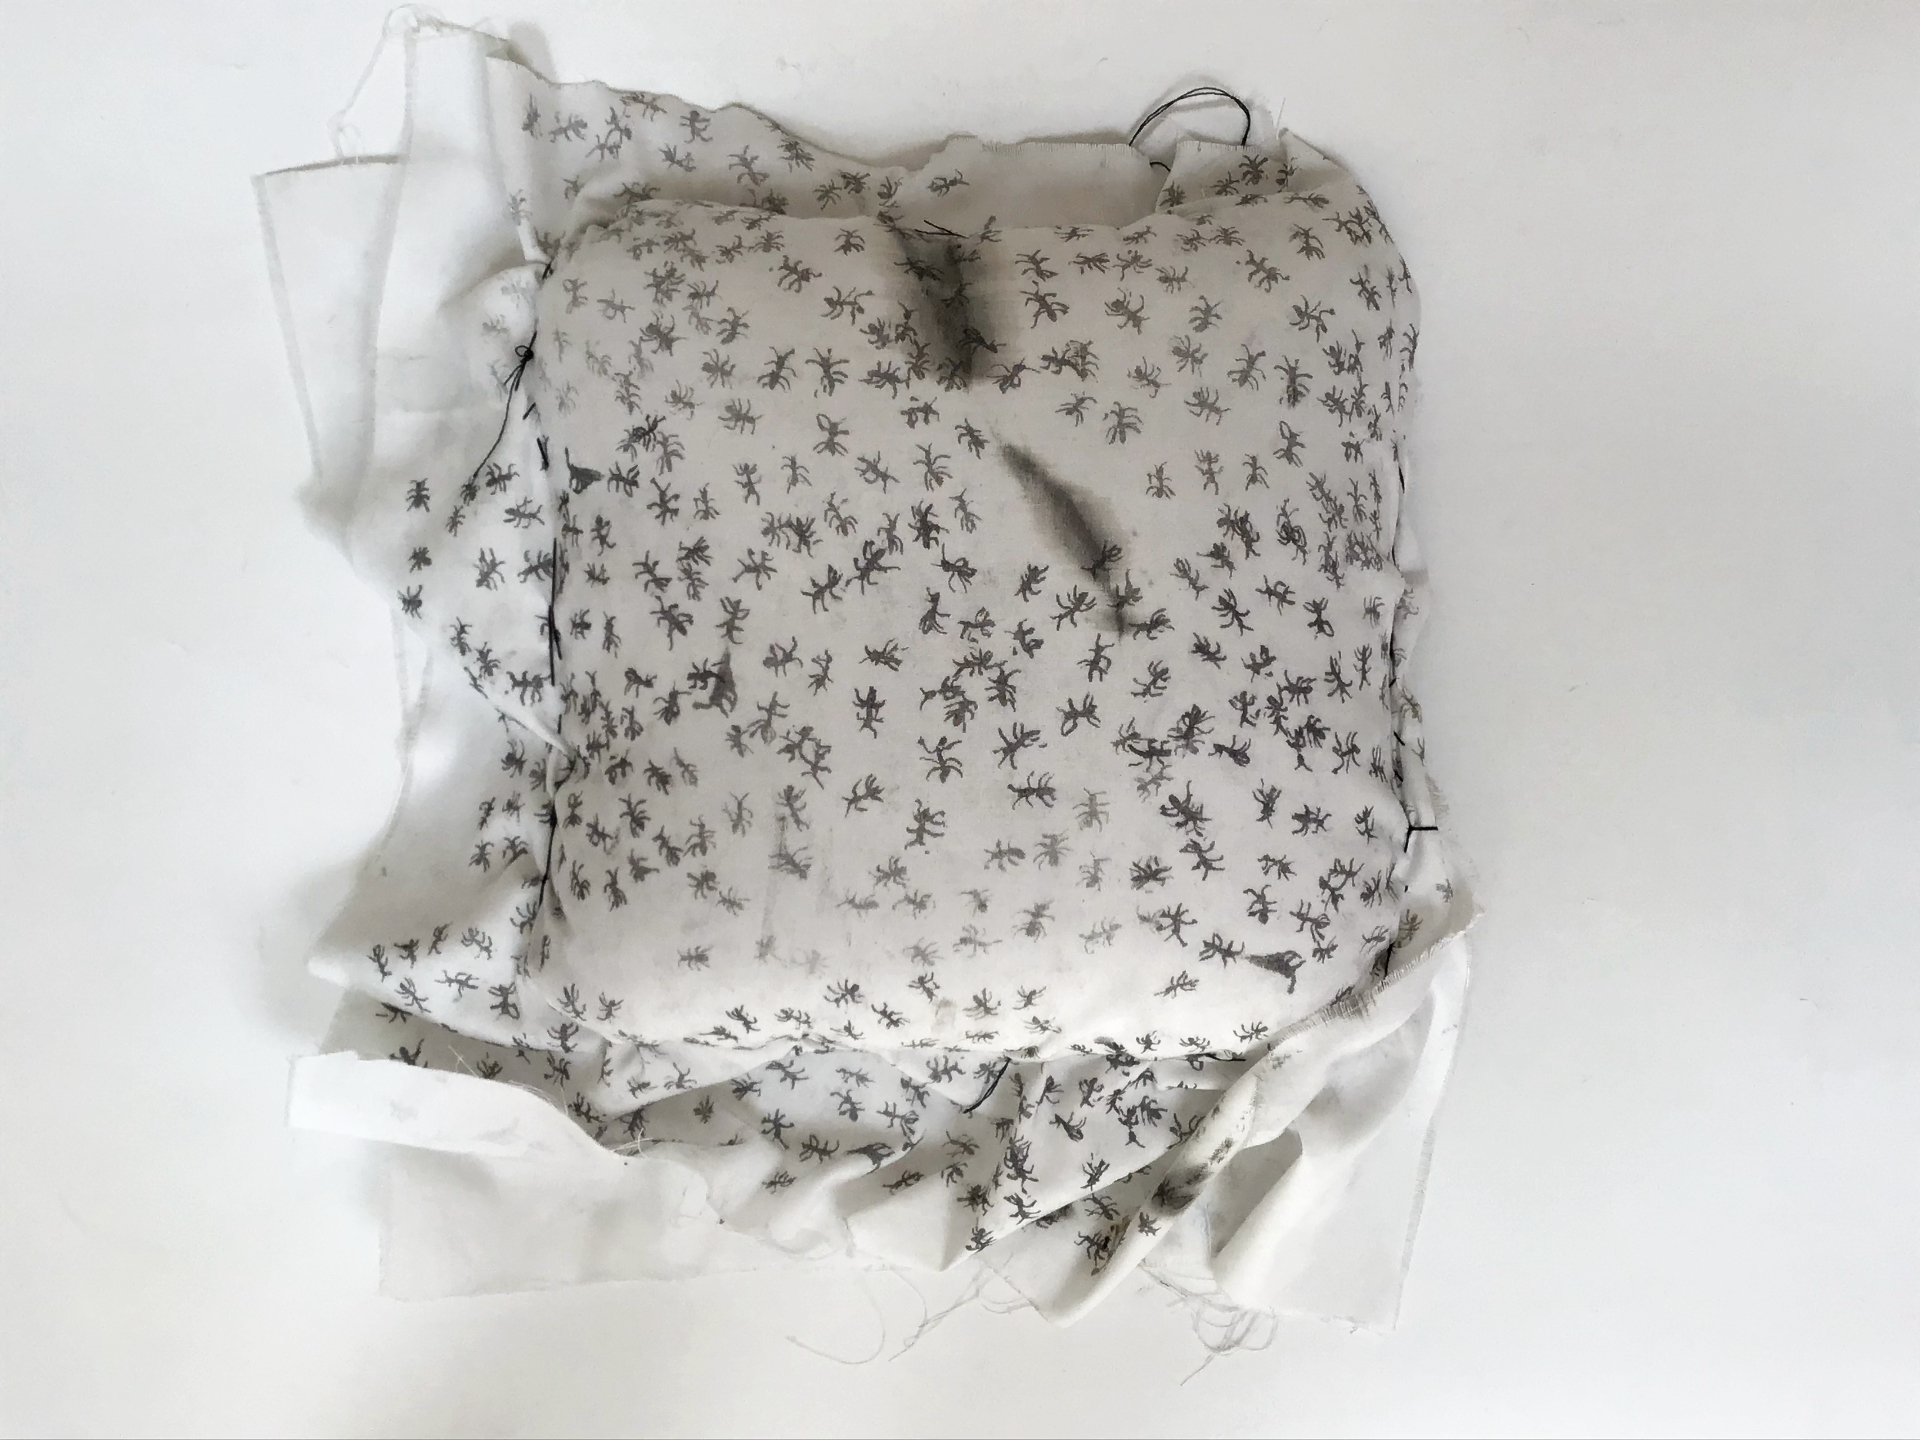 Praca przedstawia poduszkę z nadrukowanymi na niej mrówkami.